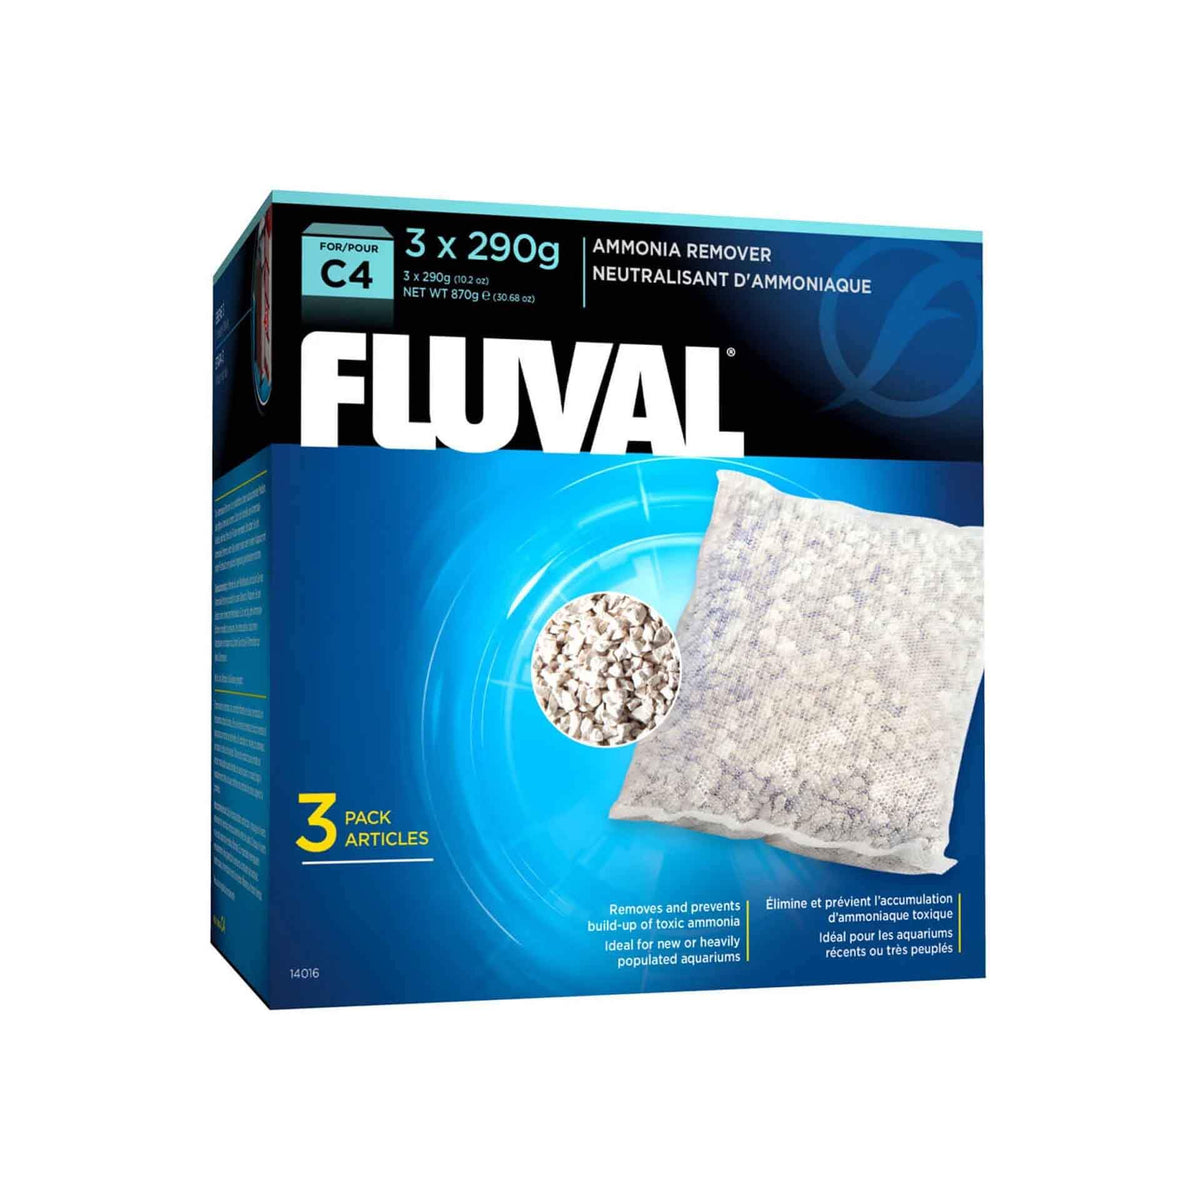 Fluval Ammonia Remover for C4 Power Filter 290g - 3 pack